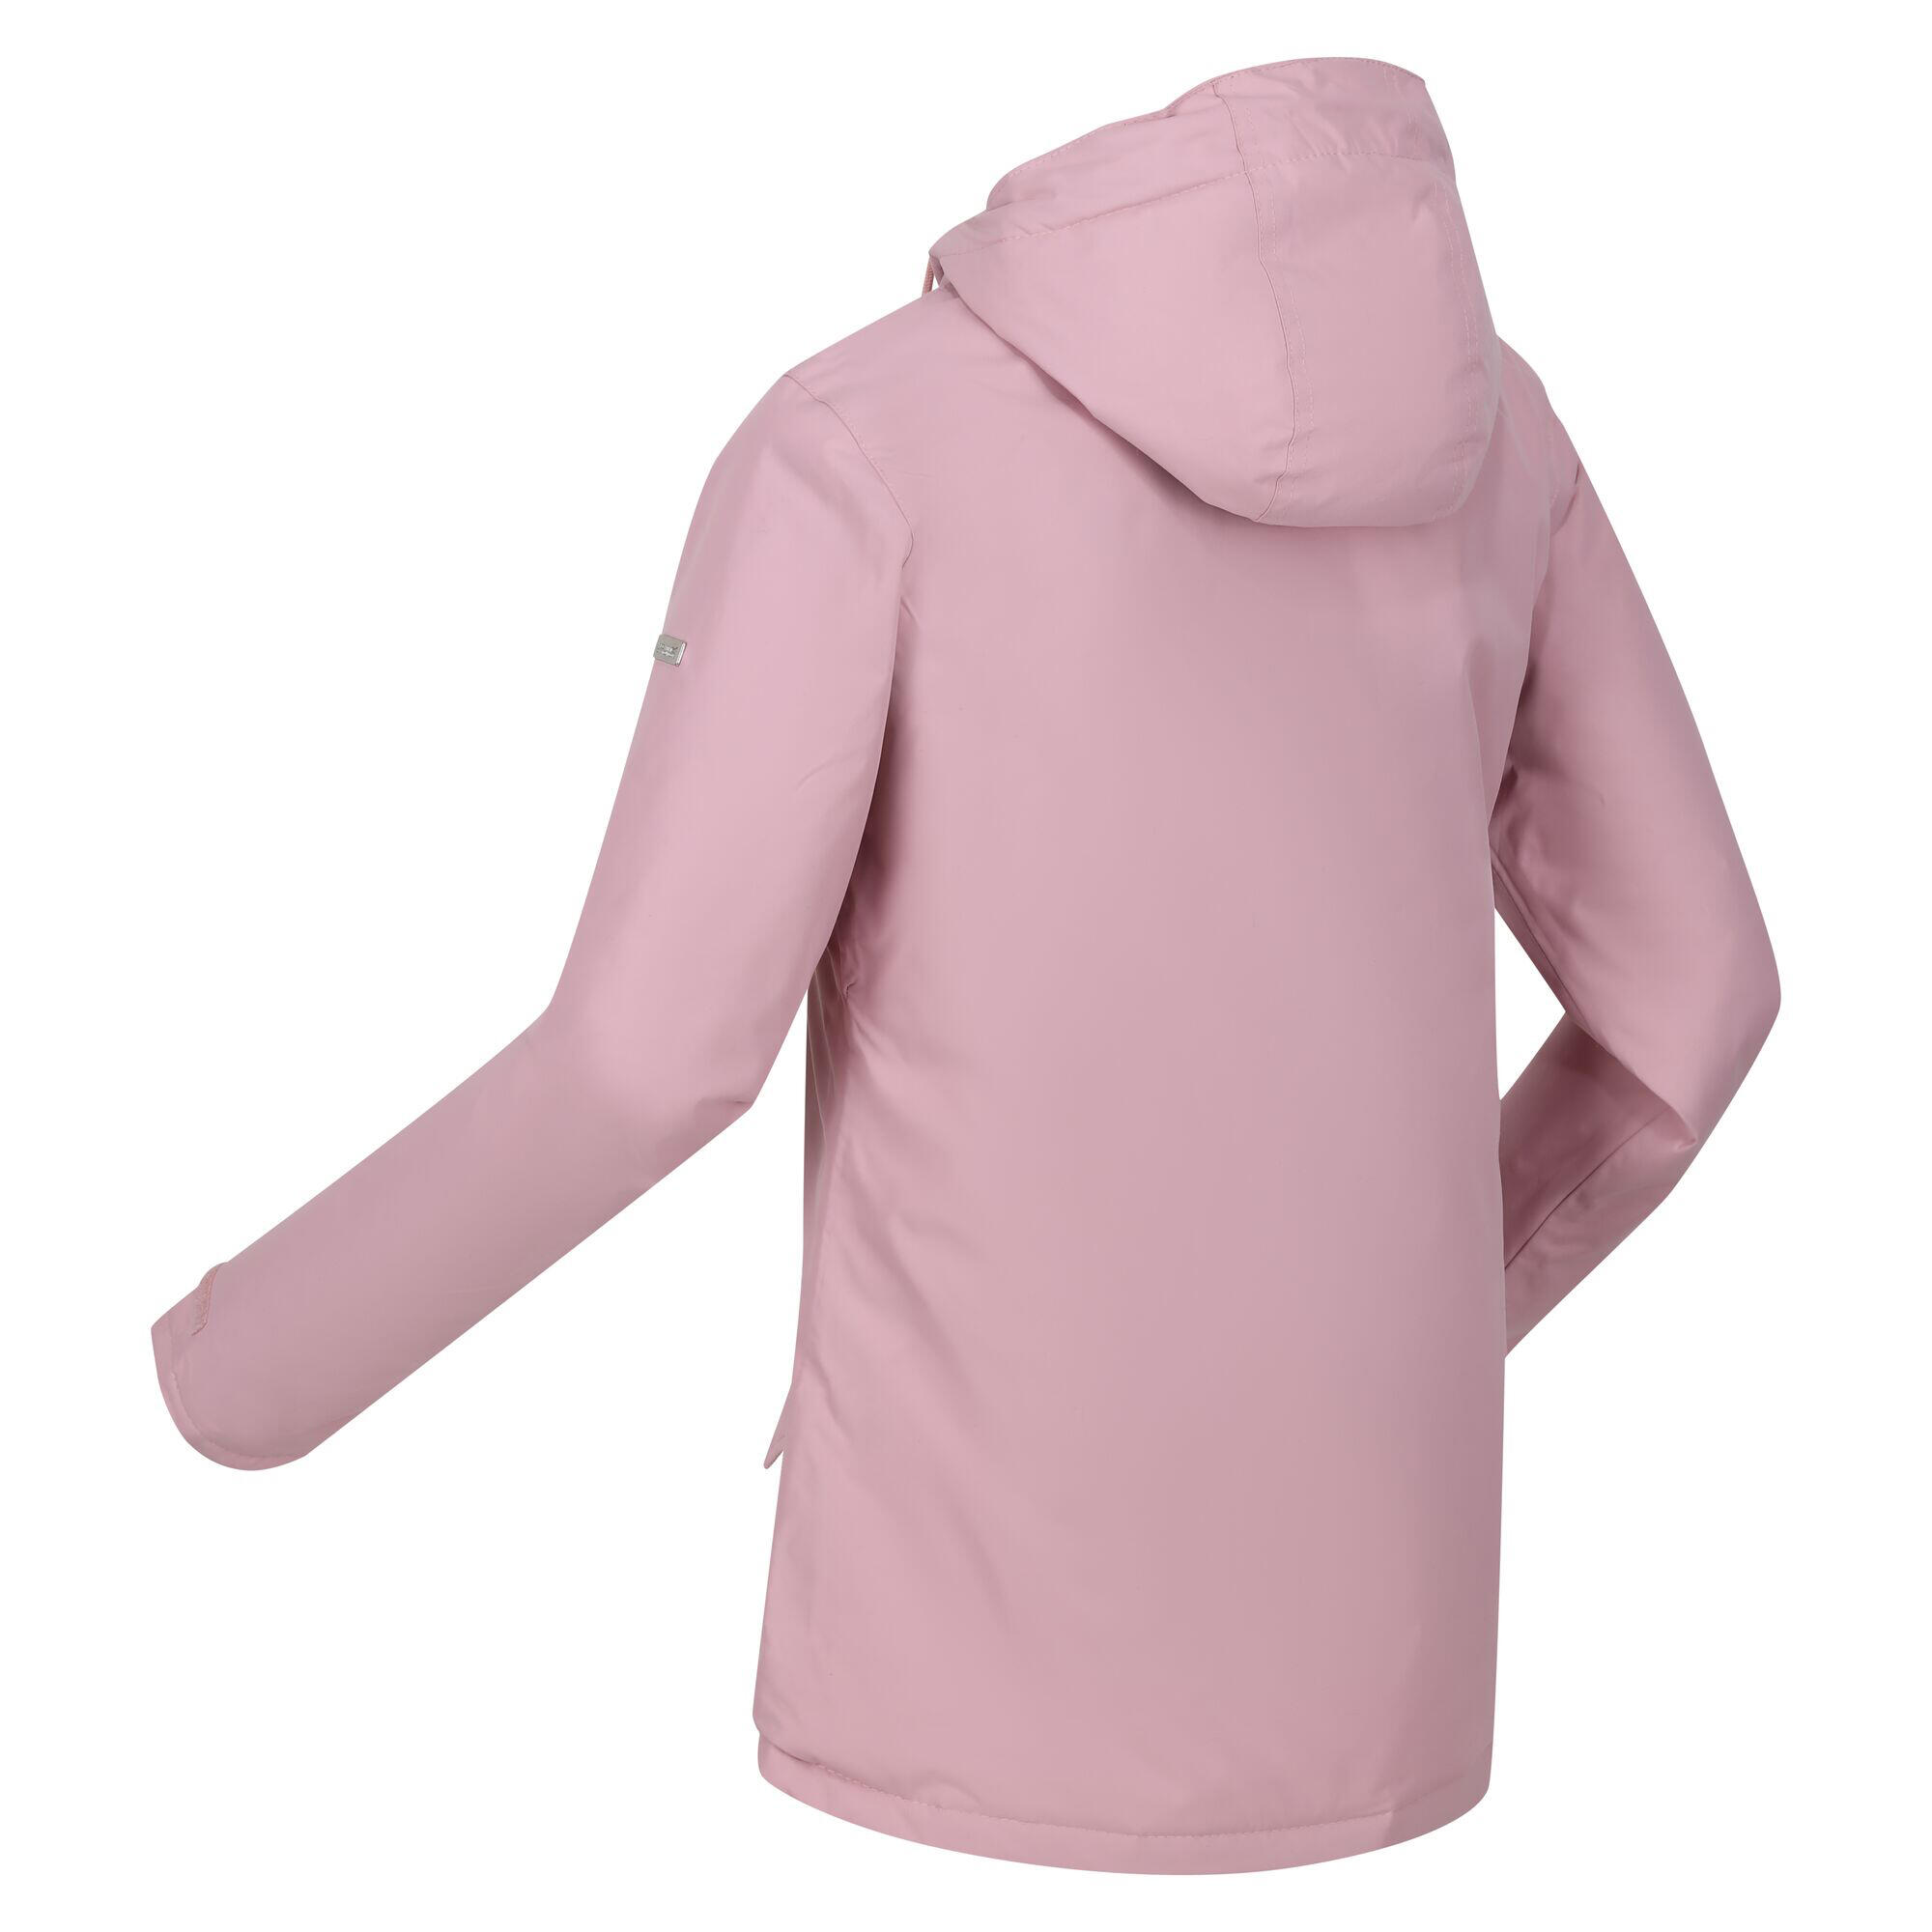 Womens/Ladies Bria Faux Fur Lined Waterproof Jacket (Powder Pink) 4/5